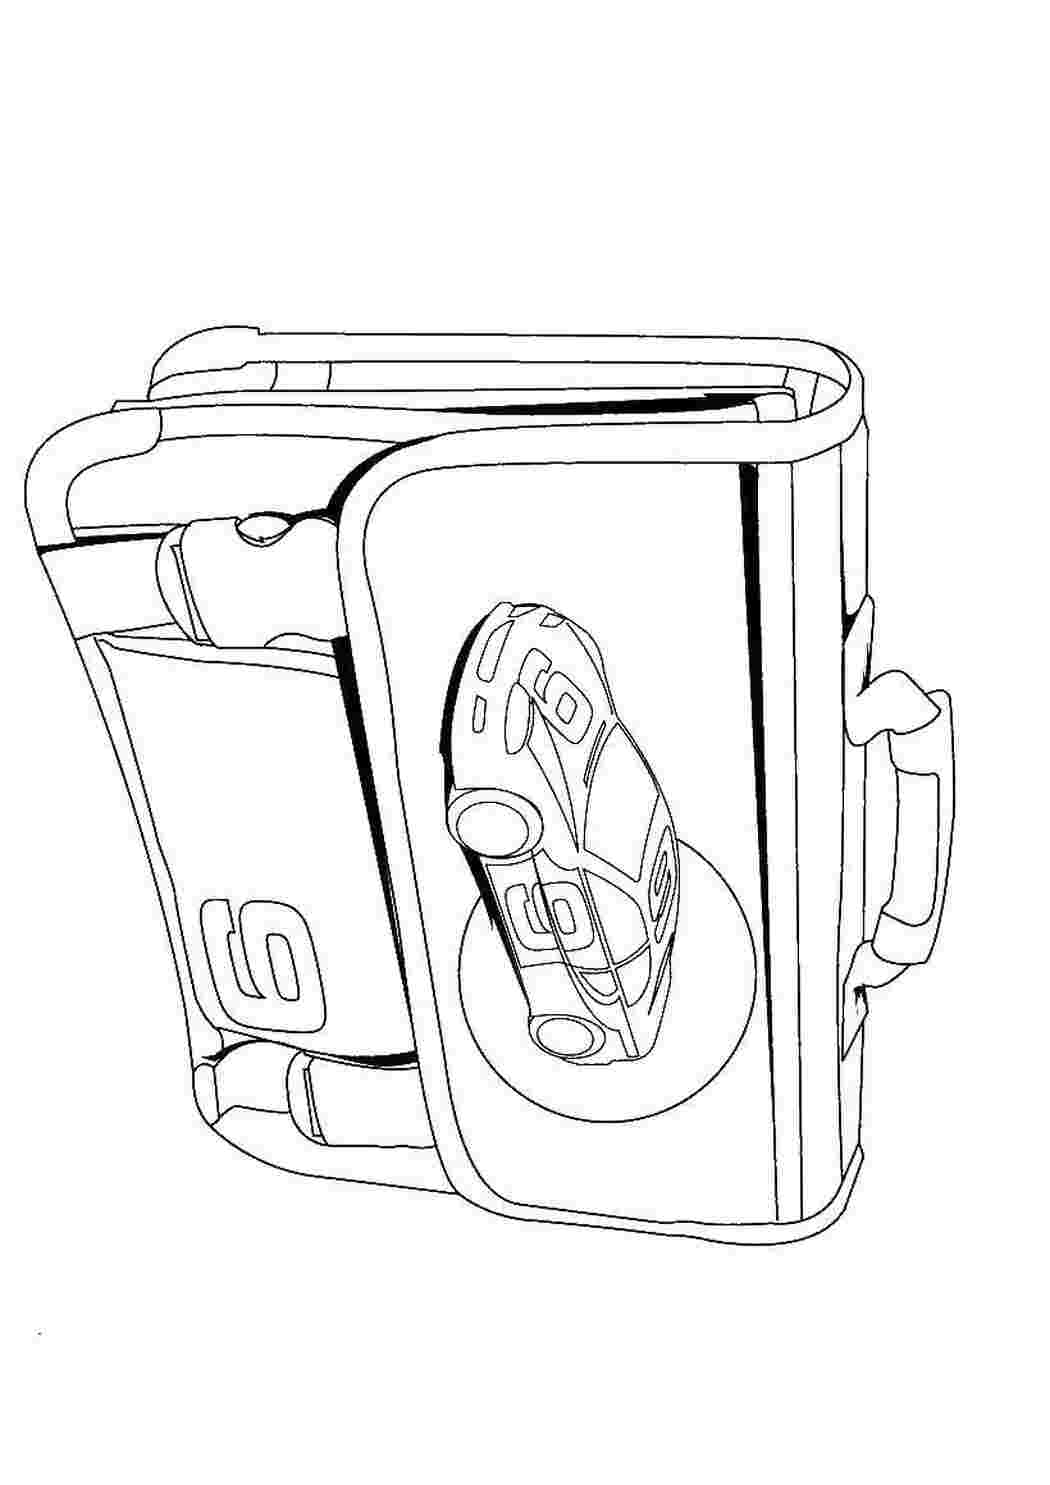 Раскраски Школьный портфель с машинкой Школьные принадлежности портфель, школа